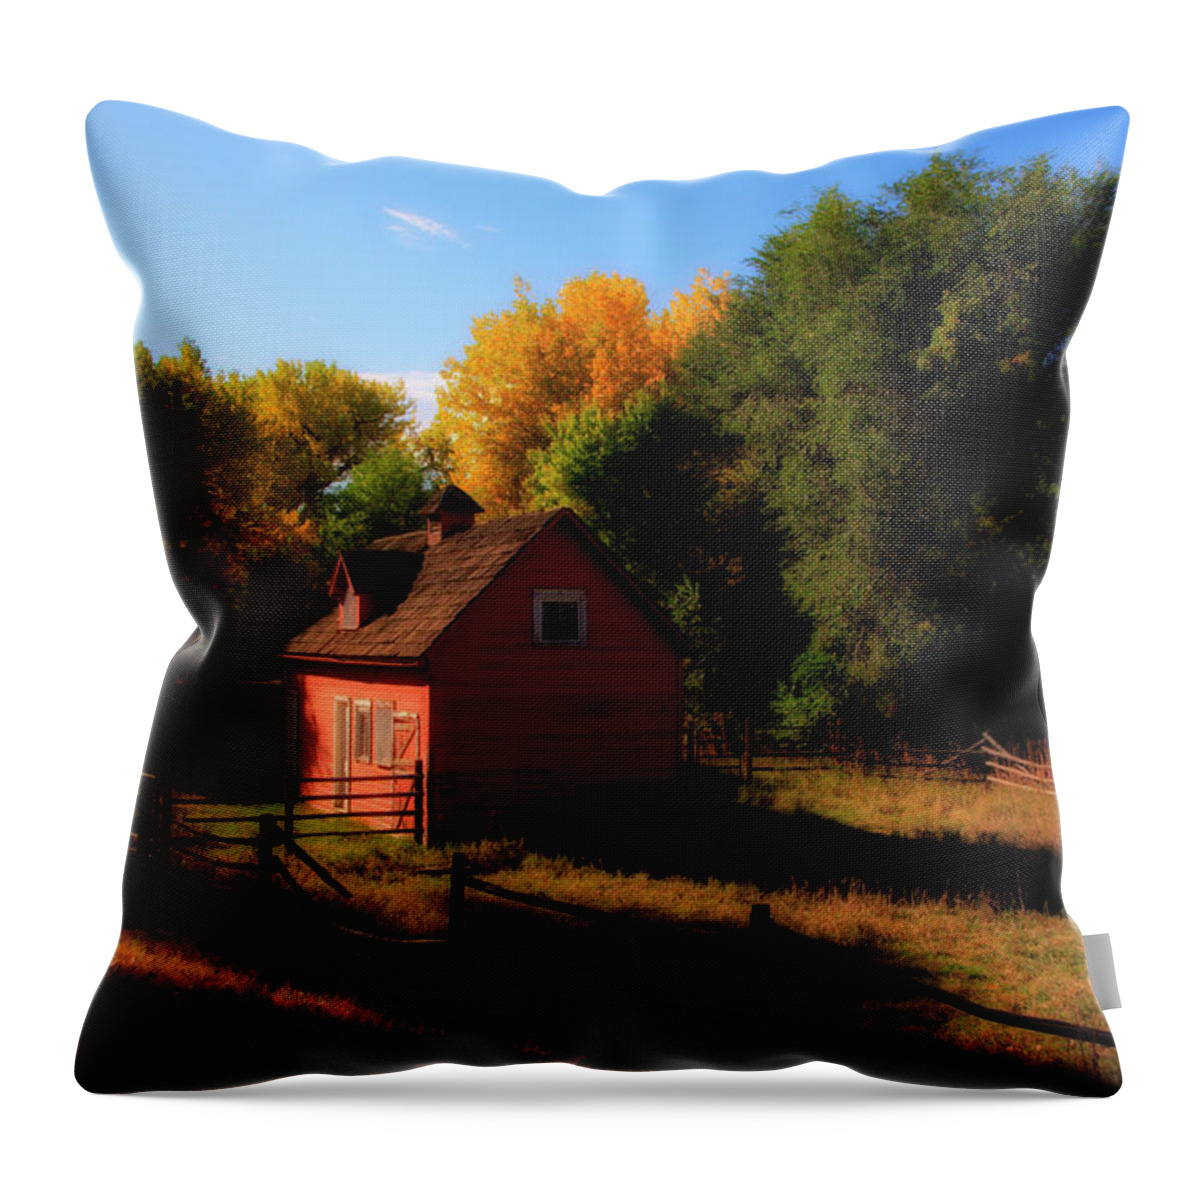 Barn Throw Pillow featuring the photograph Red Barn by Paul Beckelheimer